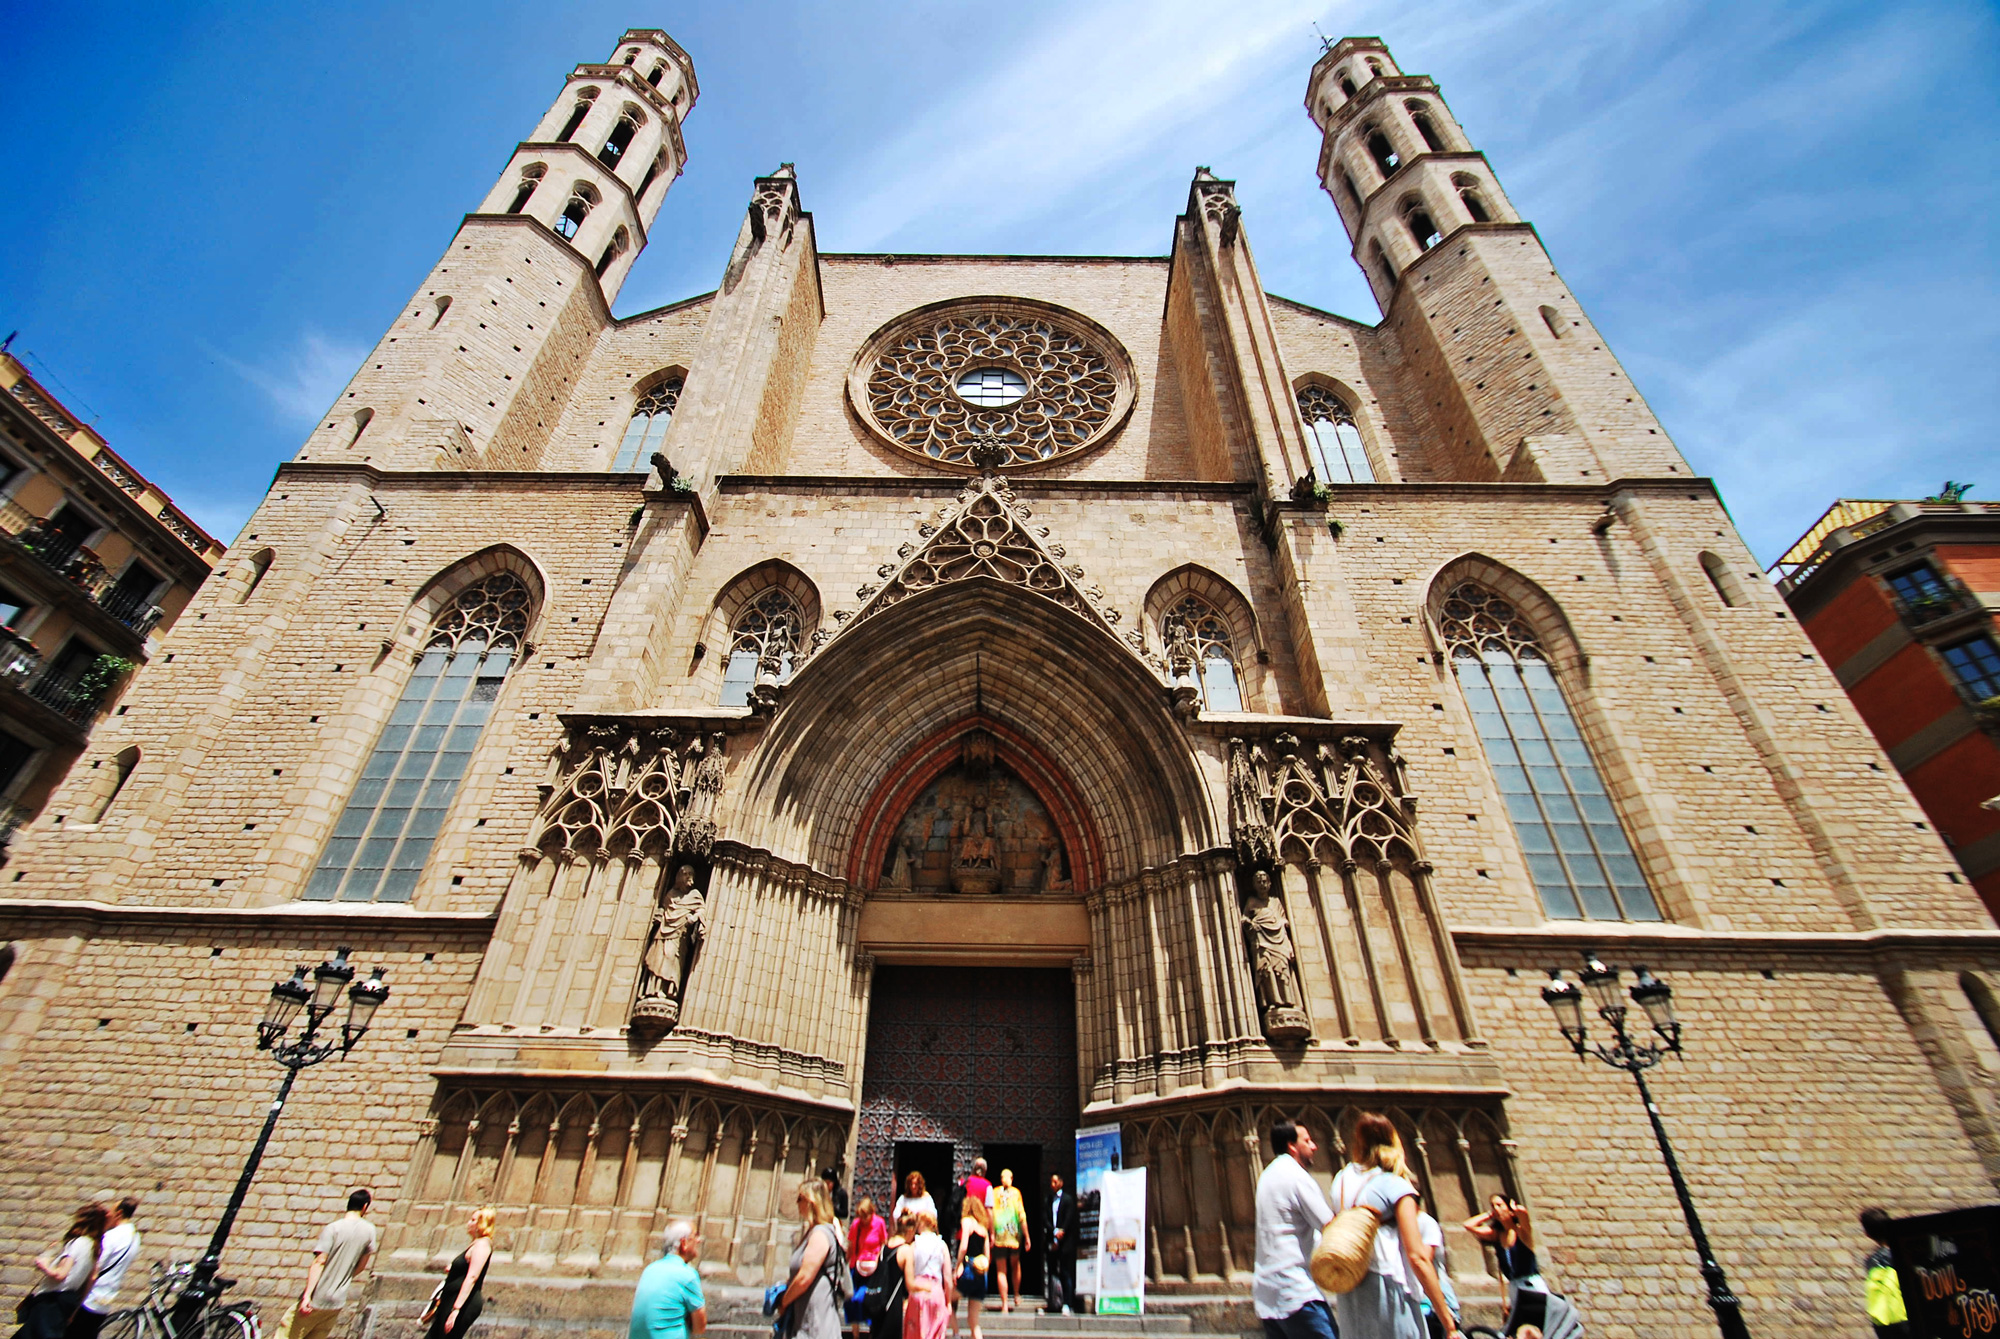 Visita la Basílica de Santa María del Mar